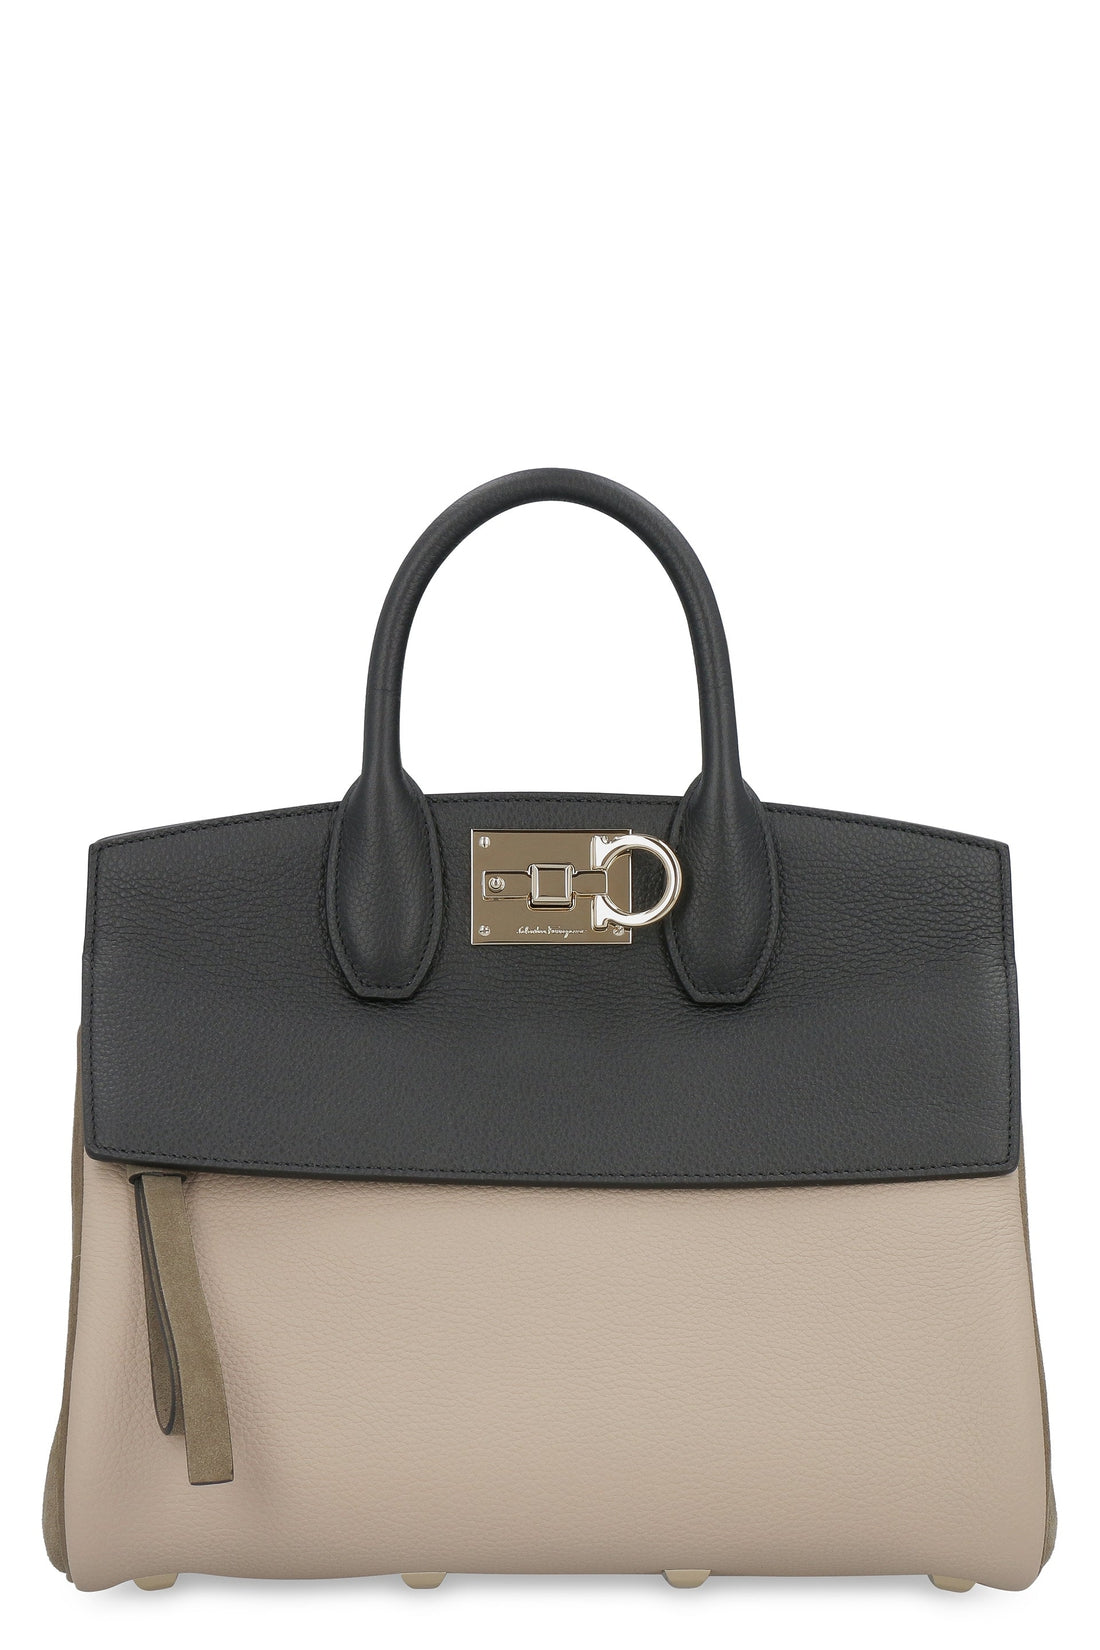 FERRAGAMO-OUTLET-SALE-Studio leather handbag-ARCHIVIST